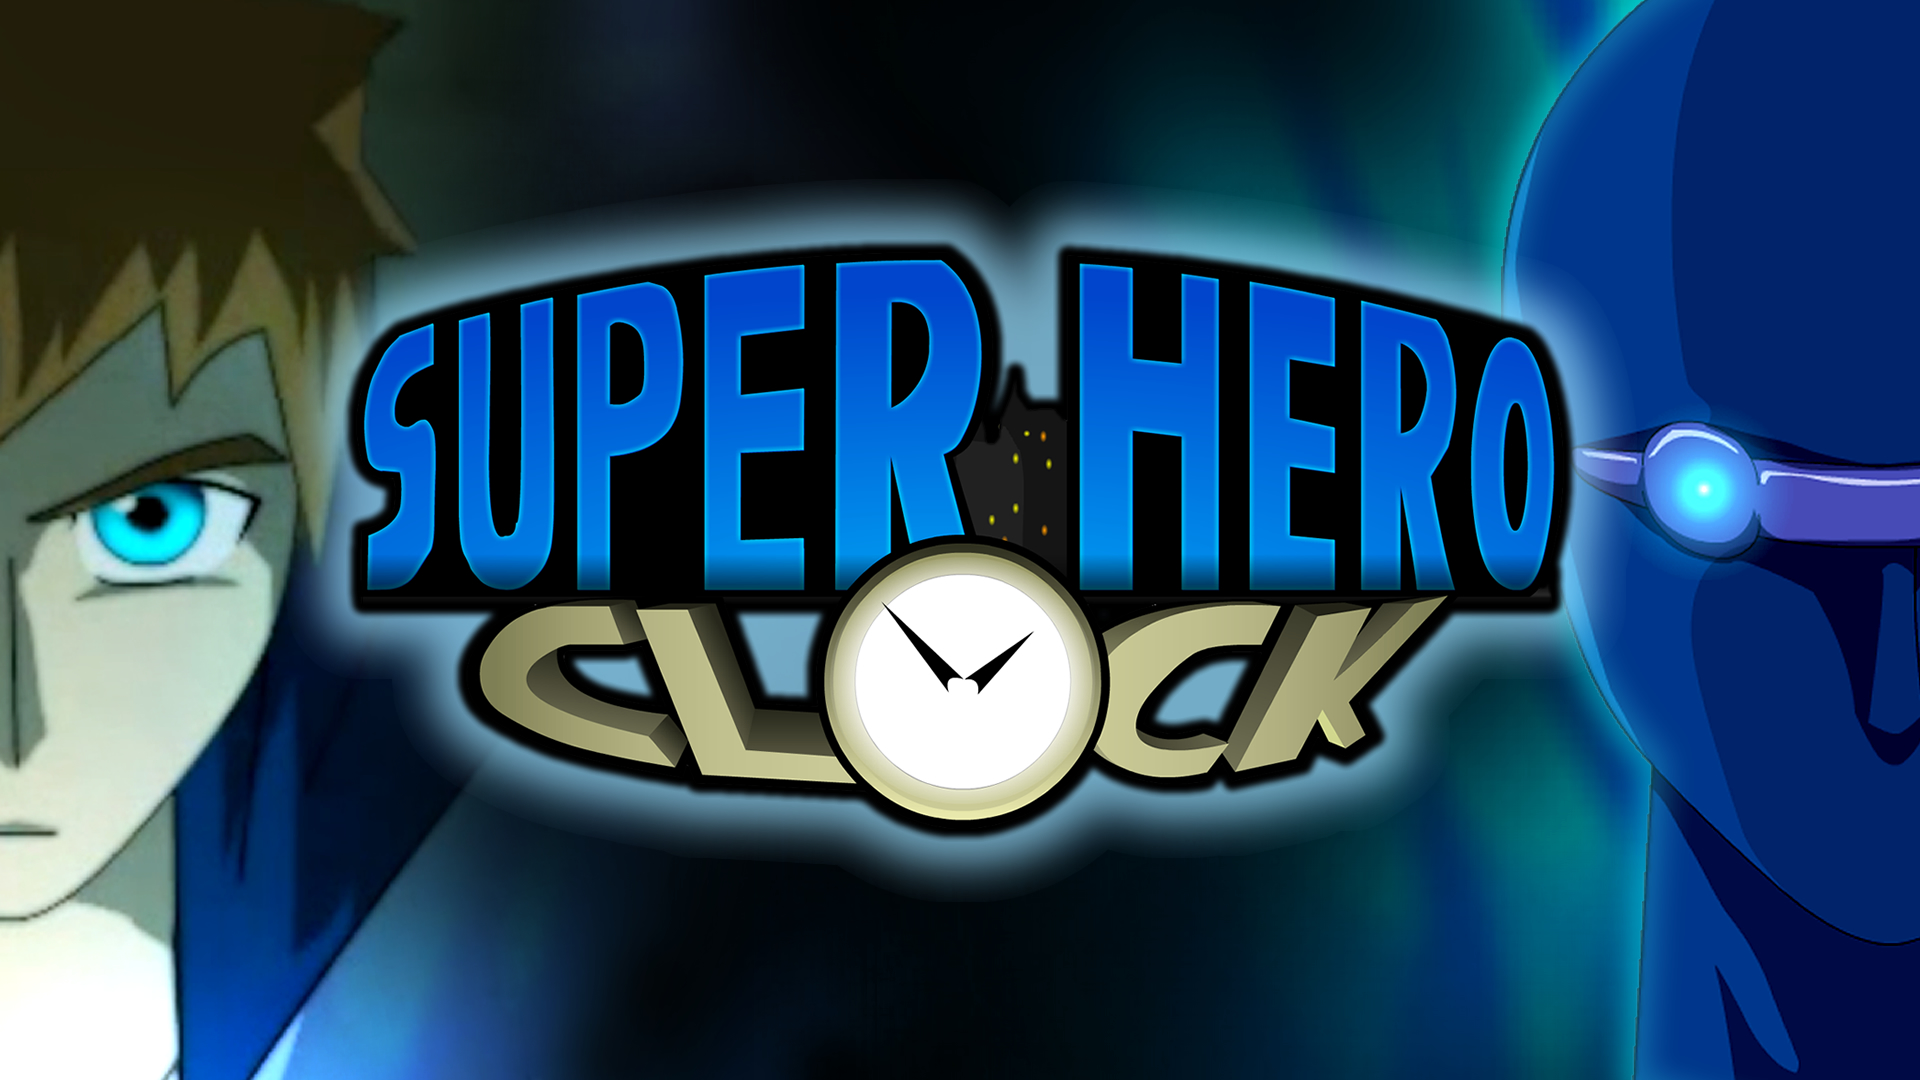 Super Hero Clock Poster